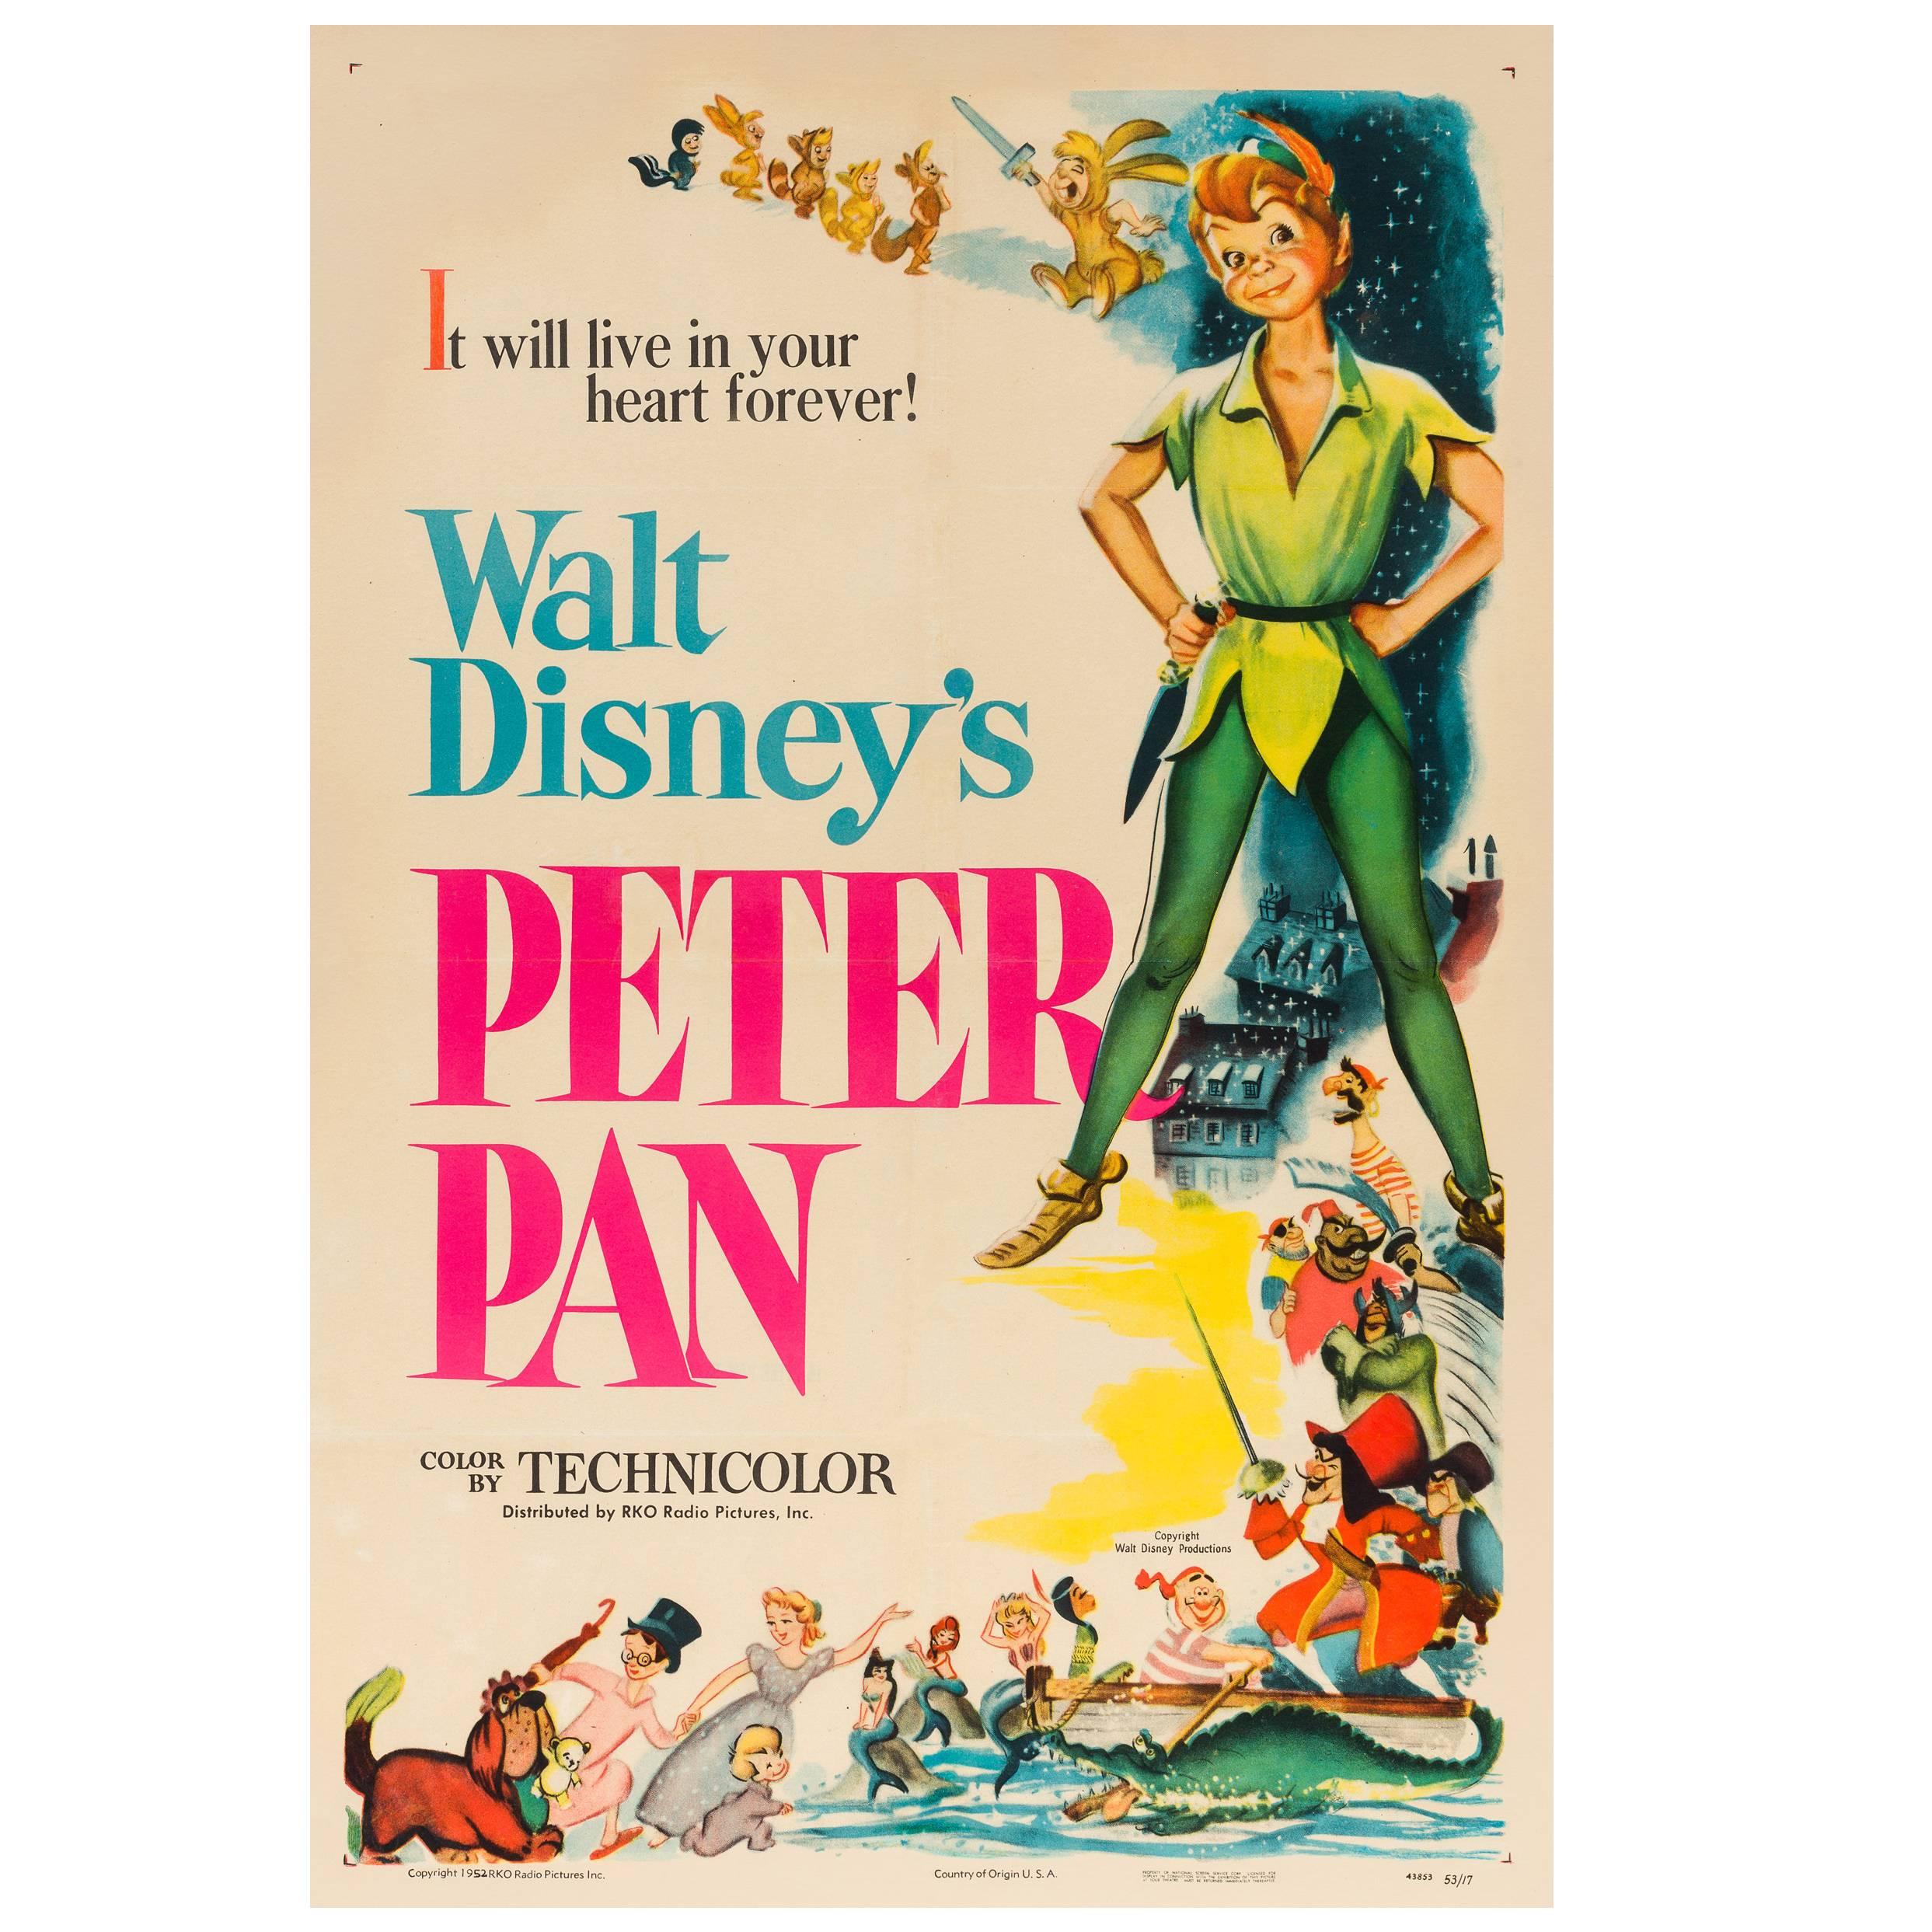 Peter Pan Original American Film Poster, Disney, 1953